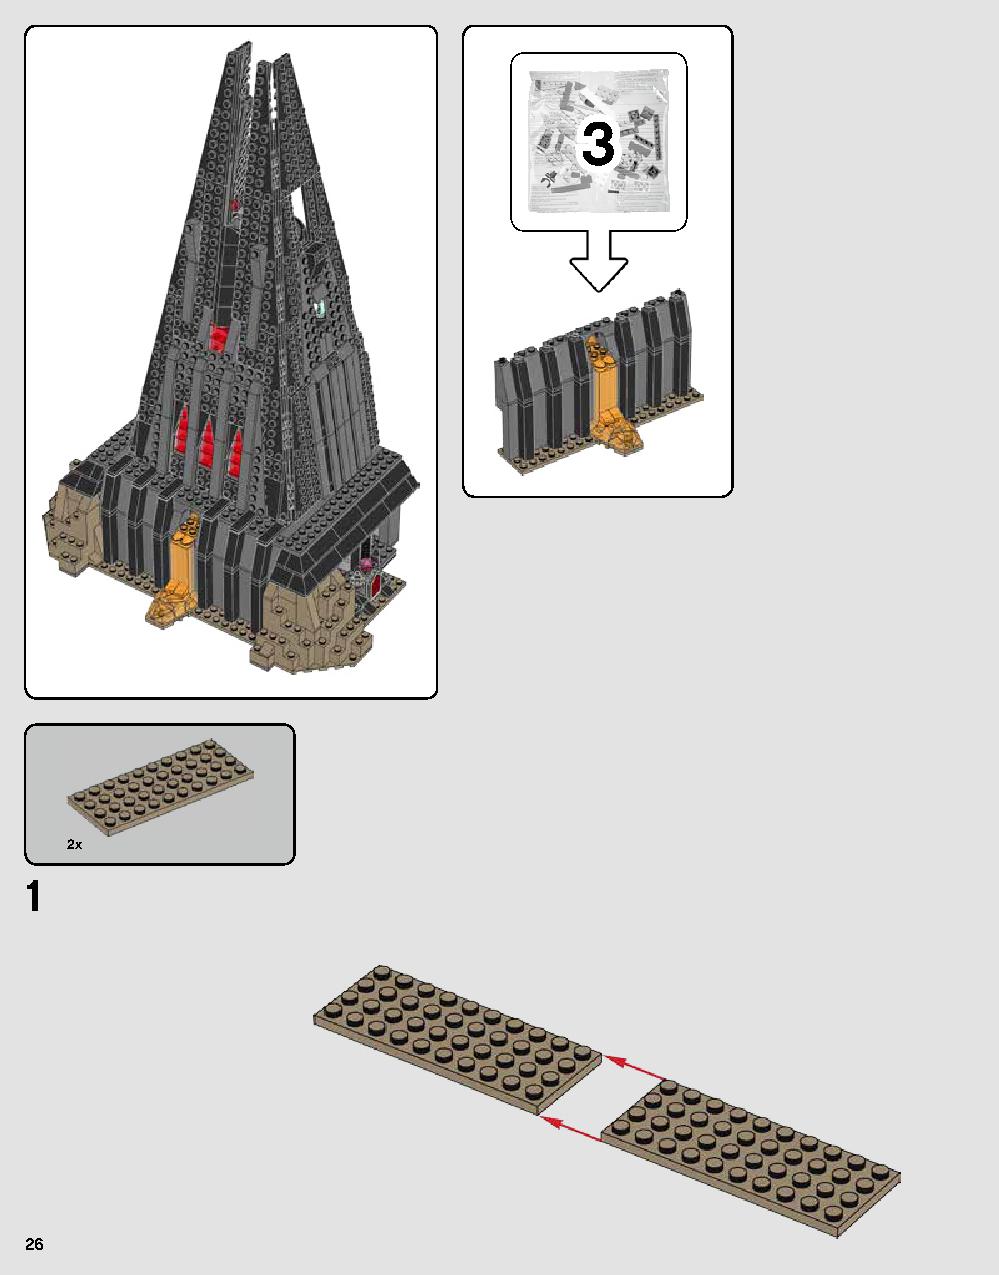 ダース・ベイダーの城 75251 レゴの商品情報 レゴの説明書・組立方法 26 page